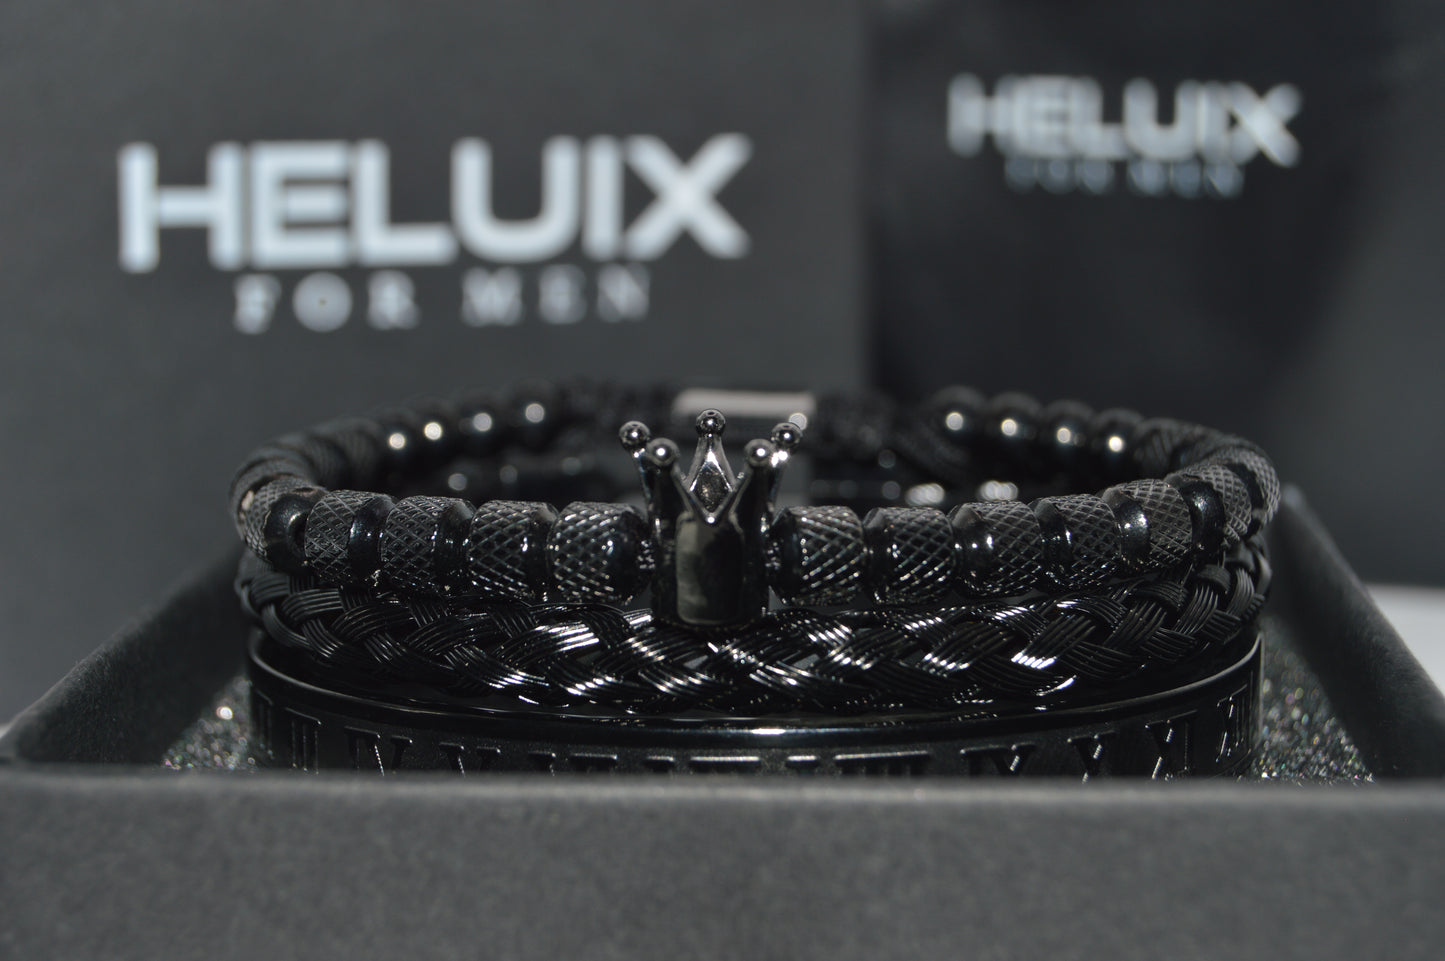 Luxury Mens Stainless Steel Crown Bracelet Set in Black